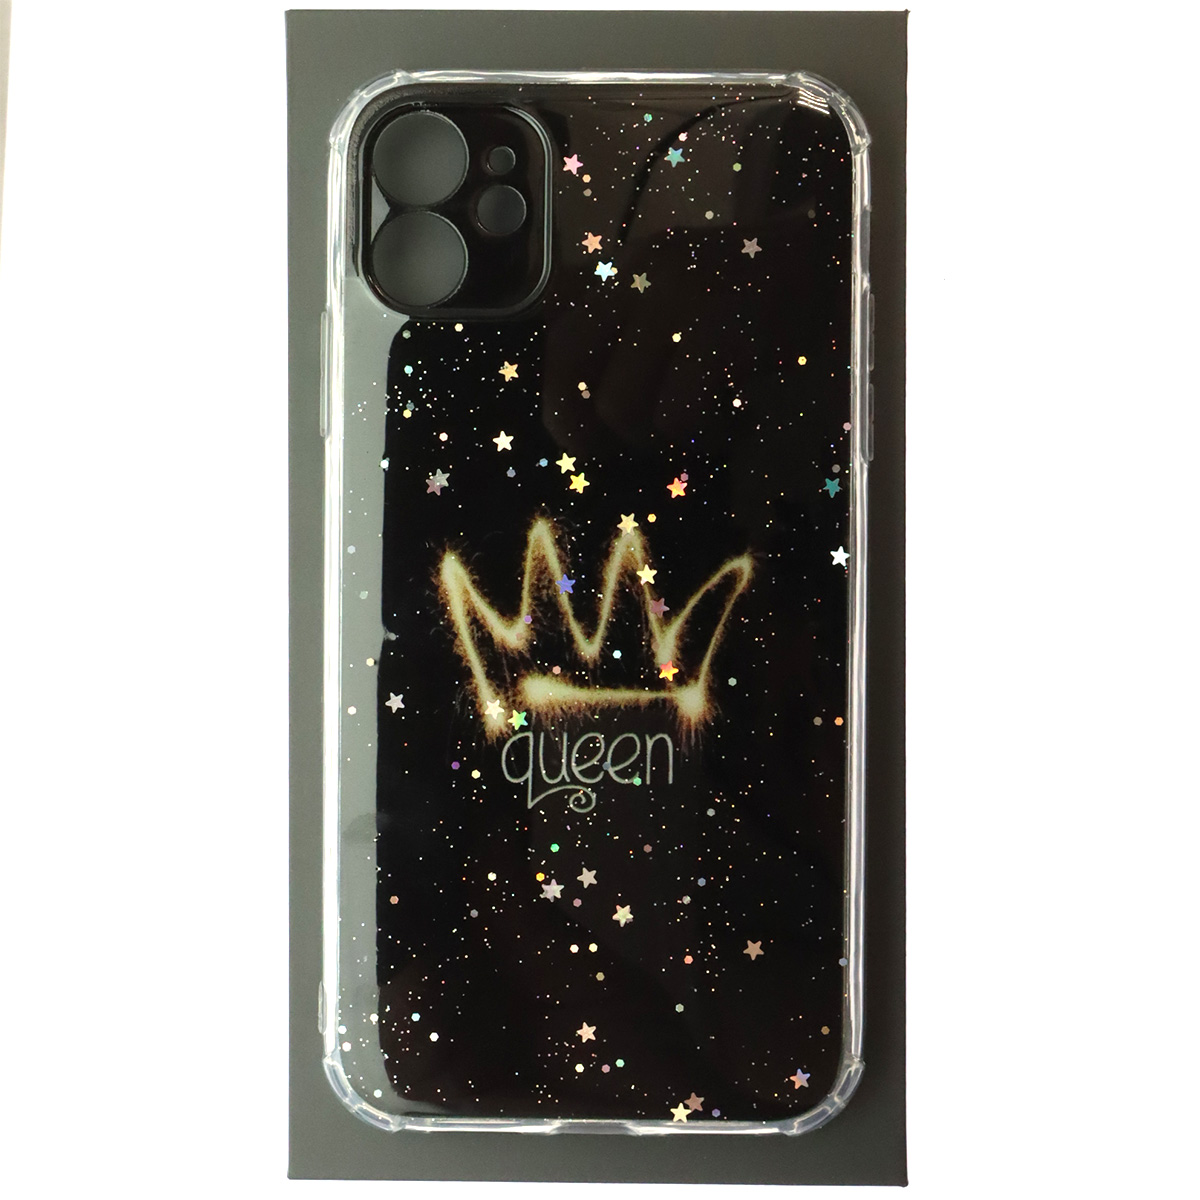 Чехол накладка для APPLE iPhone 11, силикон, глянцевый, блестки, рисунок Queen